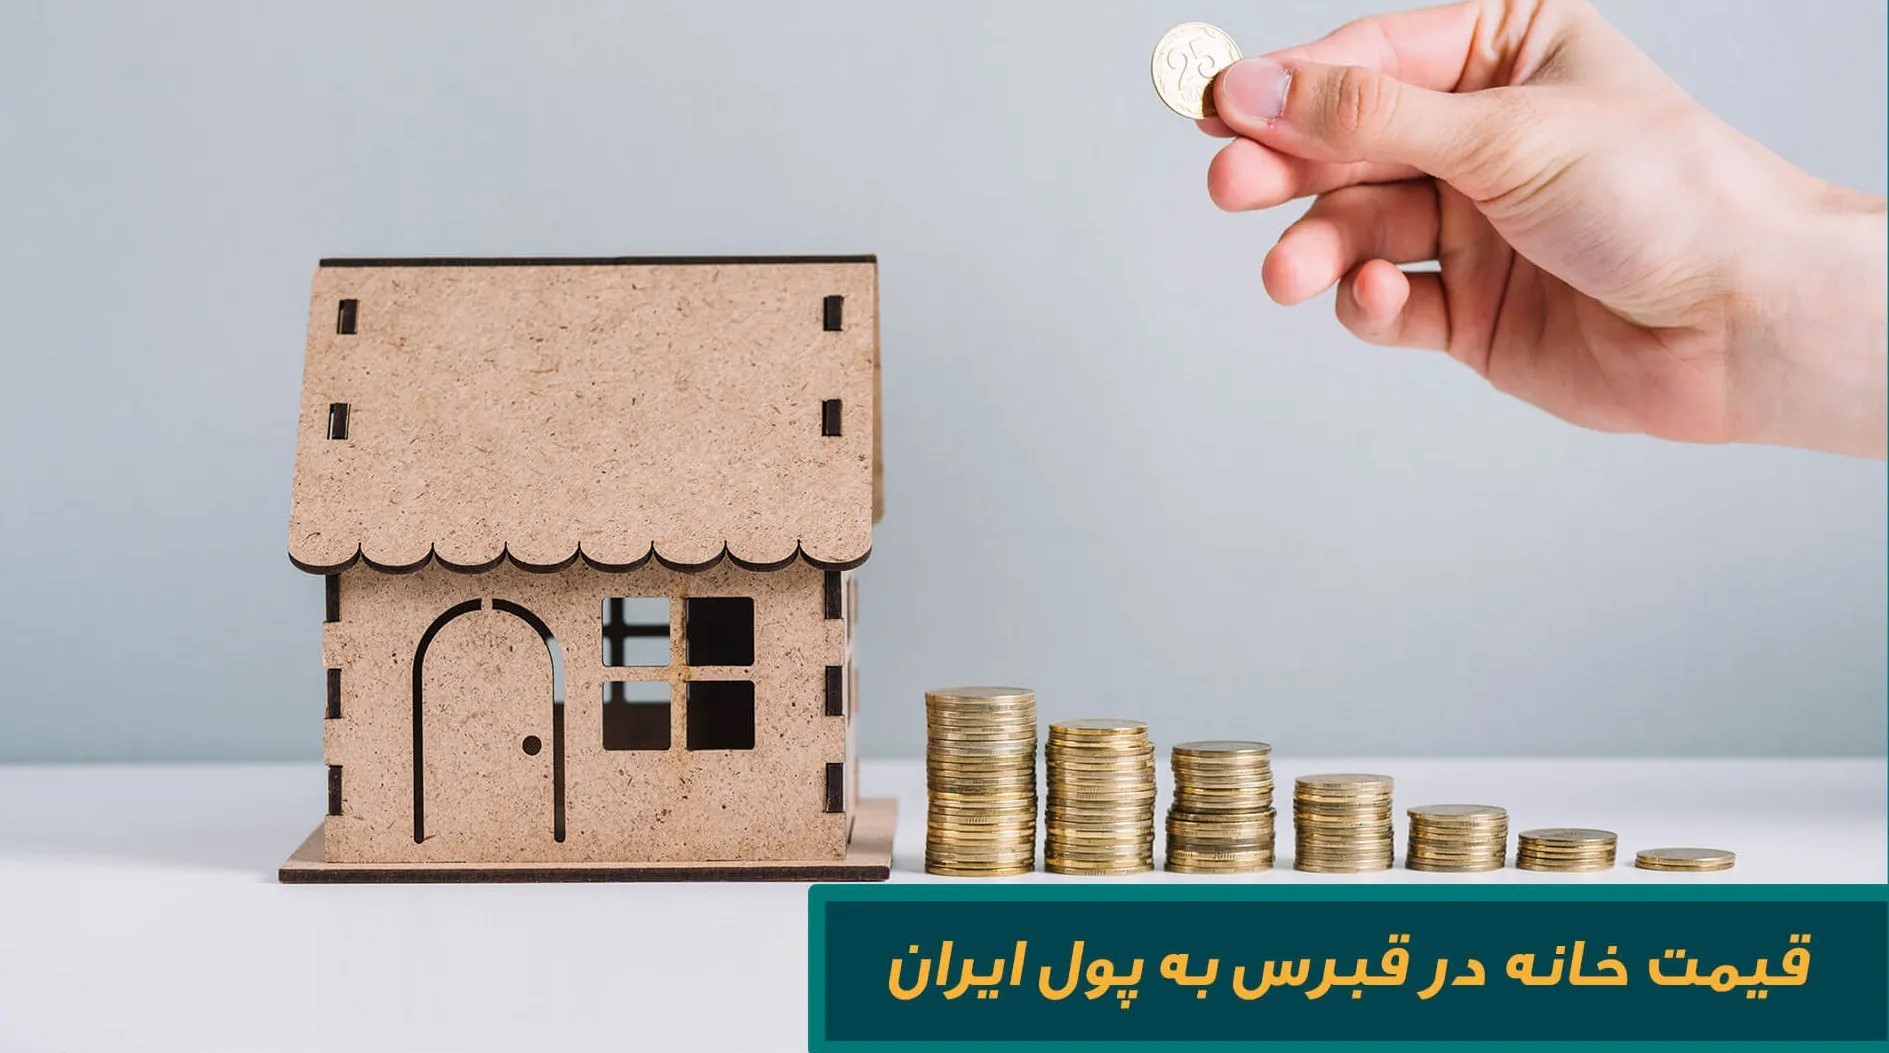 قیمت خانه در قبرس به پول ایران